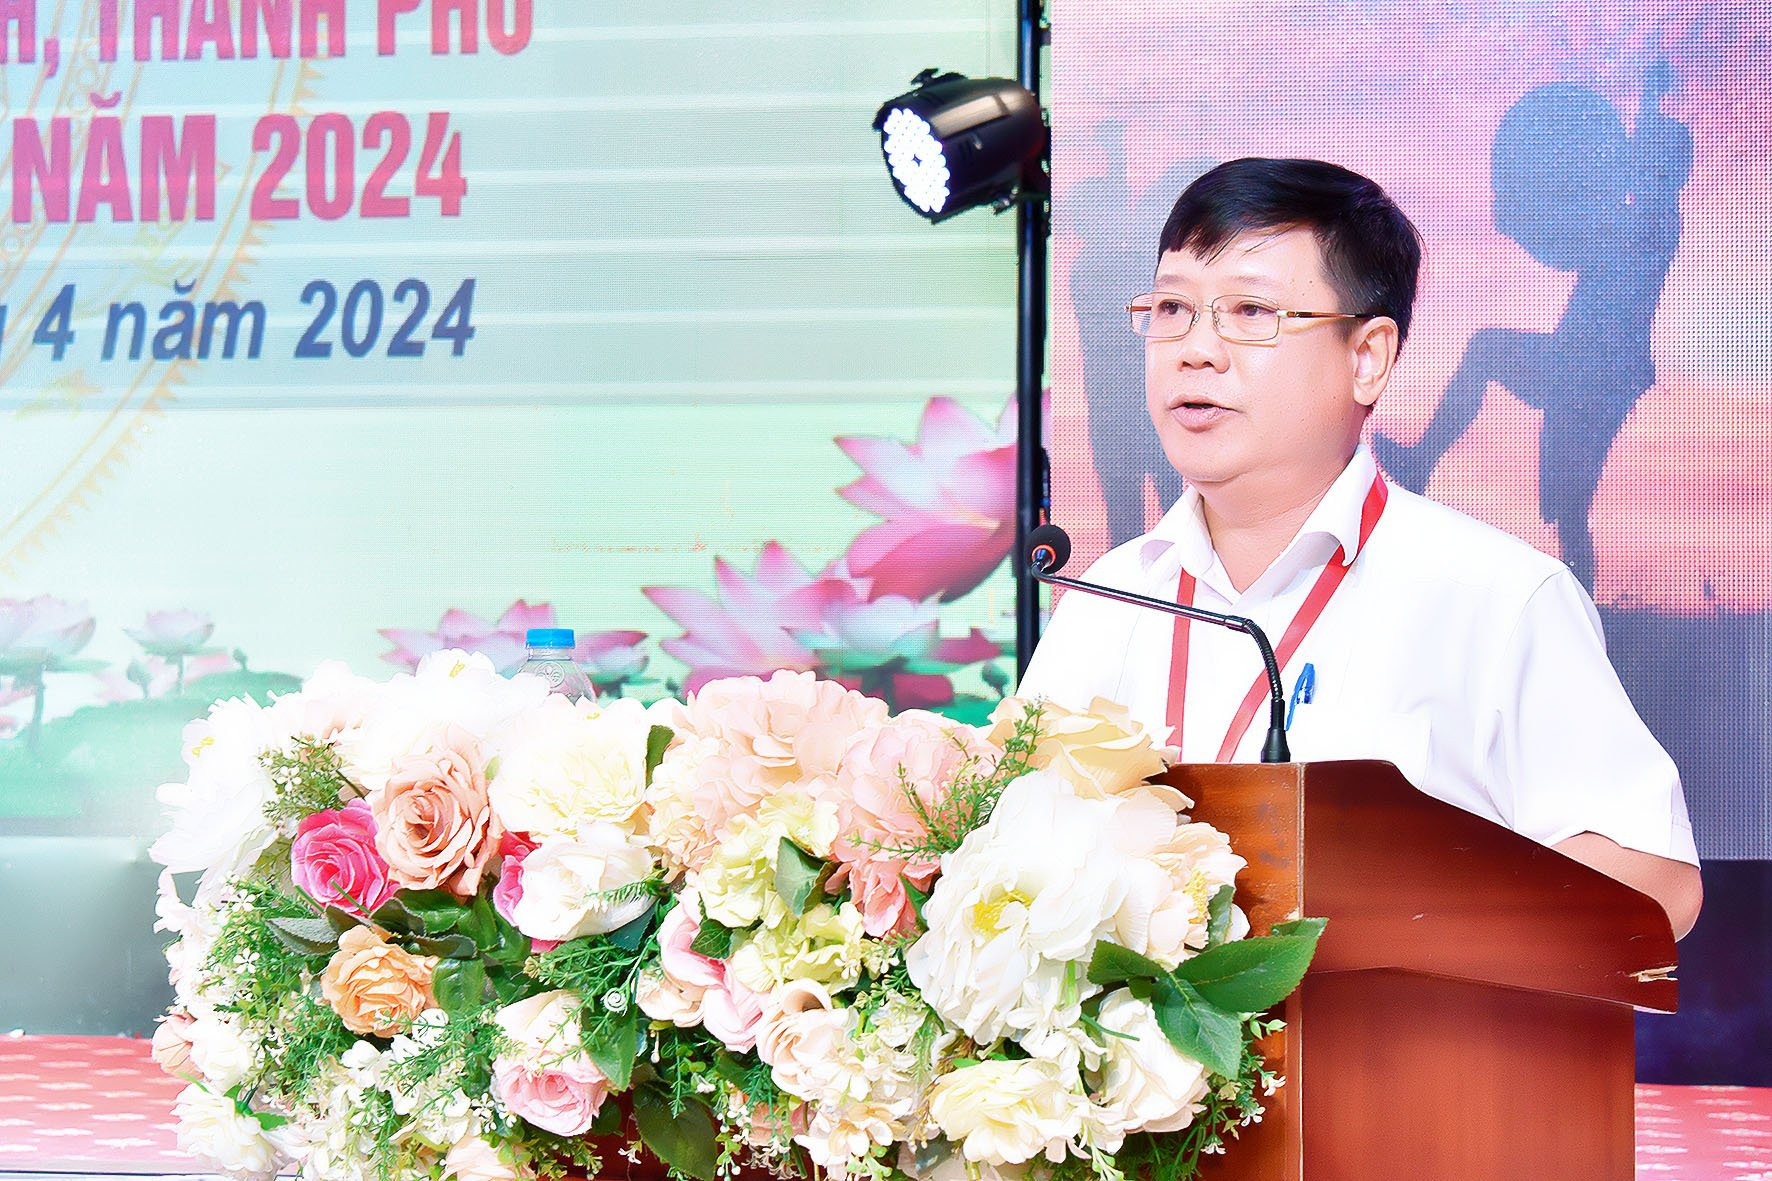 bna-đc trần quang hoà, phó bí thư thường trực Đảng uỷ khối Doanh nghiệp tỉnh Nghệ An phát biểu tham luận tại hội nghị.jpeg